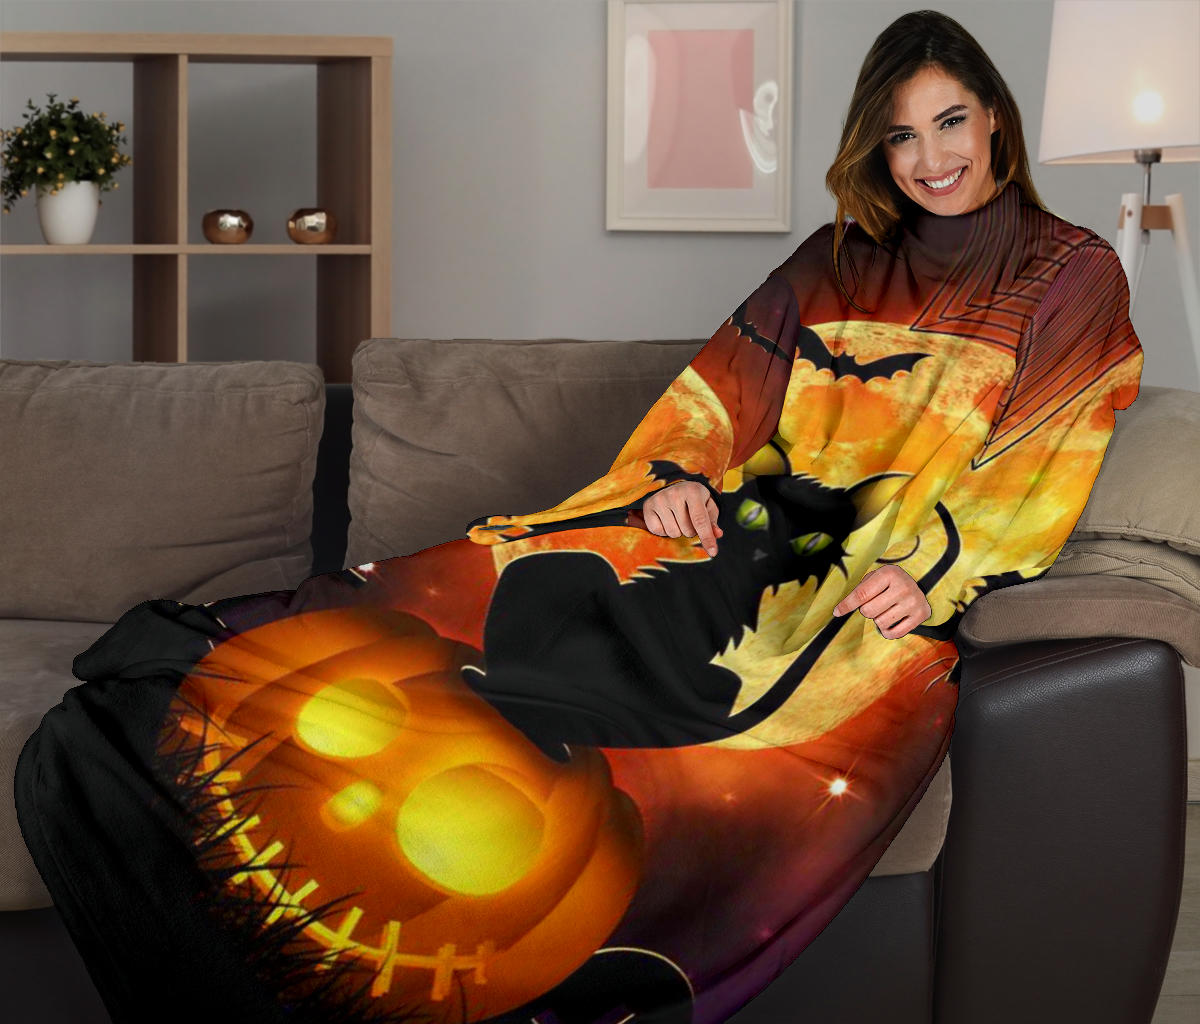 Black Cat & Pumpkin Halloween Sleeve Blanket